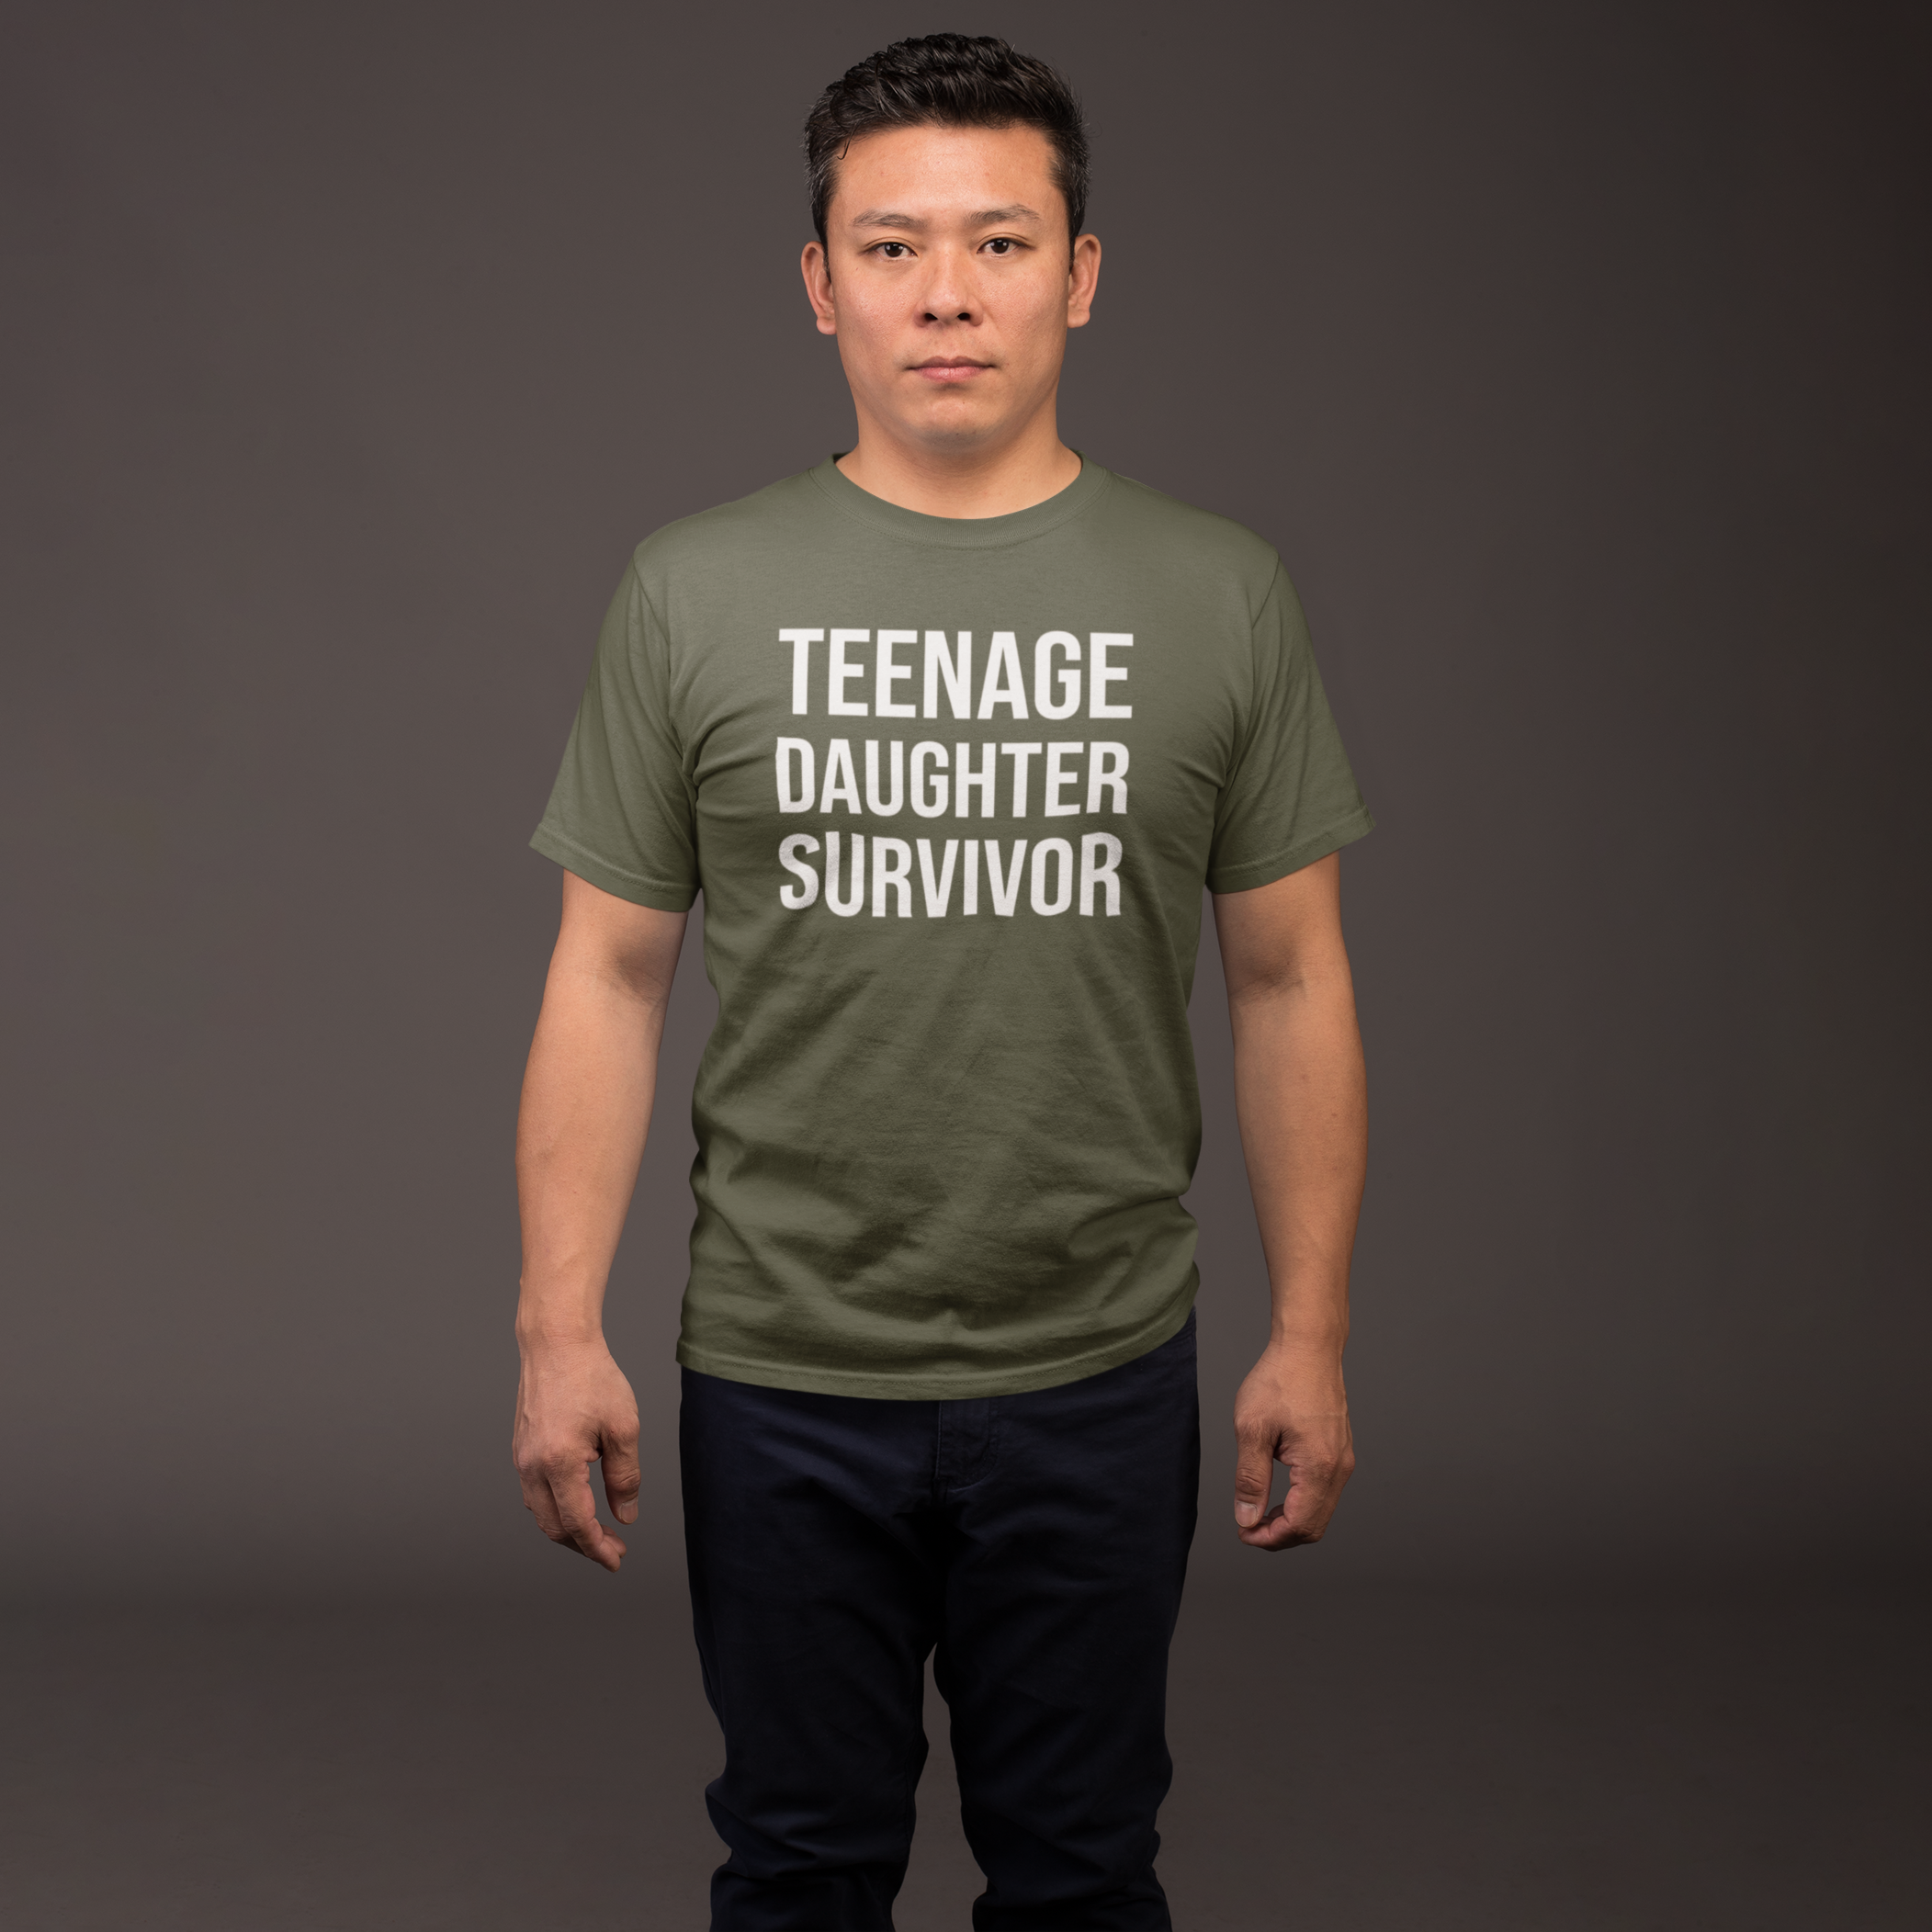 'Teenage daughter survivor' volwassene shirt